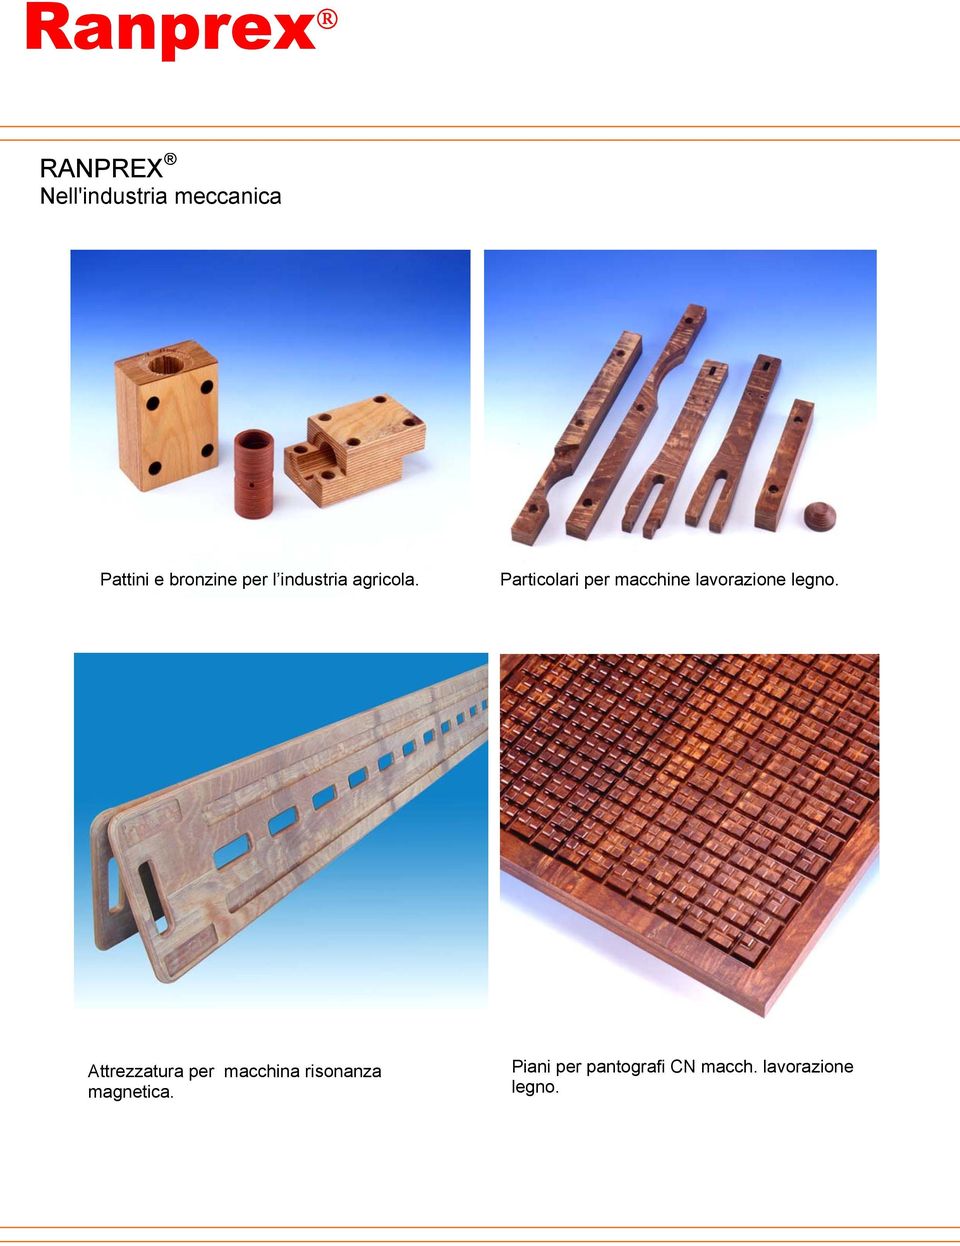 Particolari per macchine lavorazione legno.